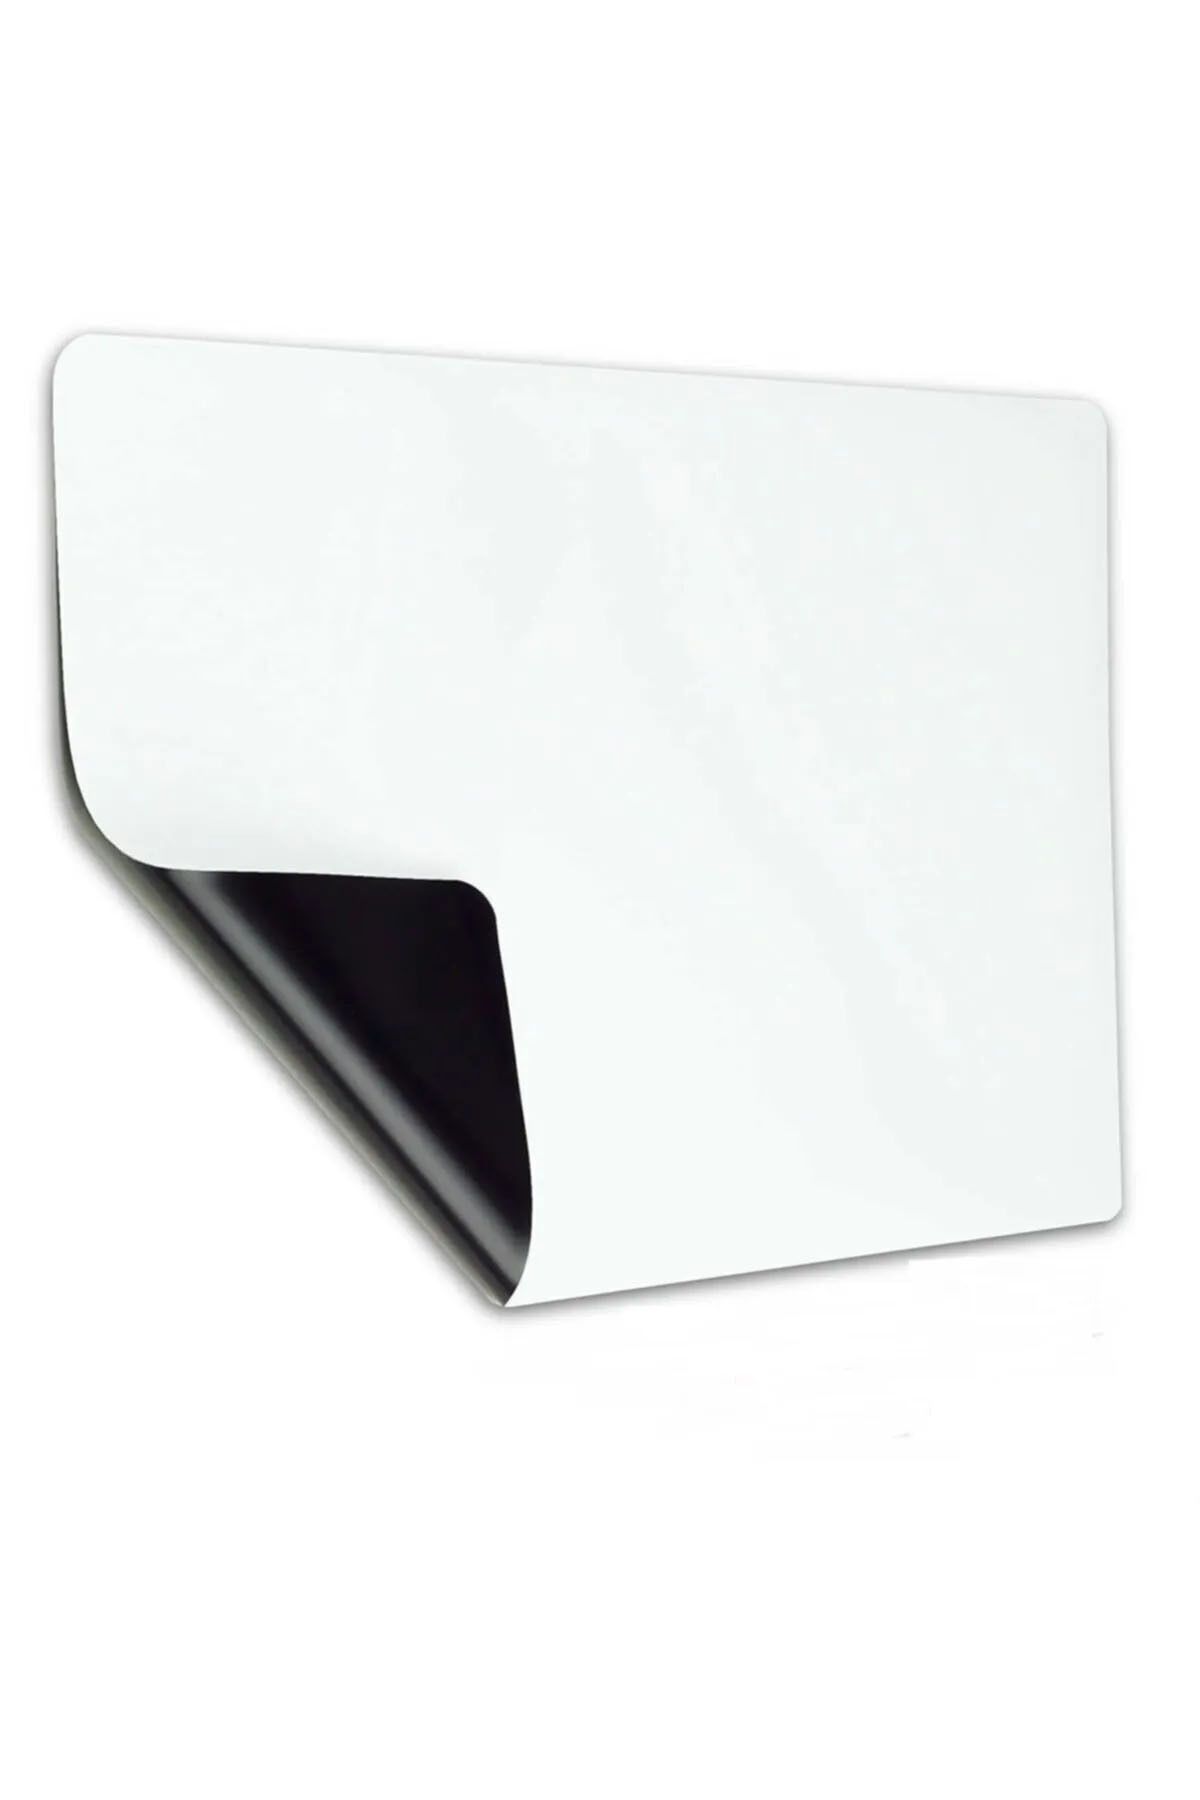 Tutunabilir Kağıt Mıknatıslı Manyetik Magnet Beyaz Tahta 30cm x 30cm Katlanabilir Silinebilir Yazı Tahtası + Kalem